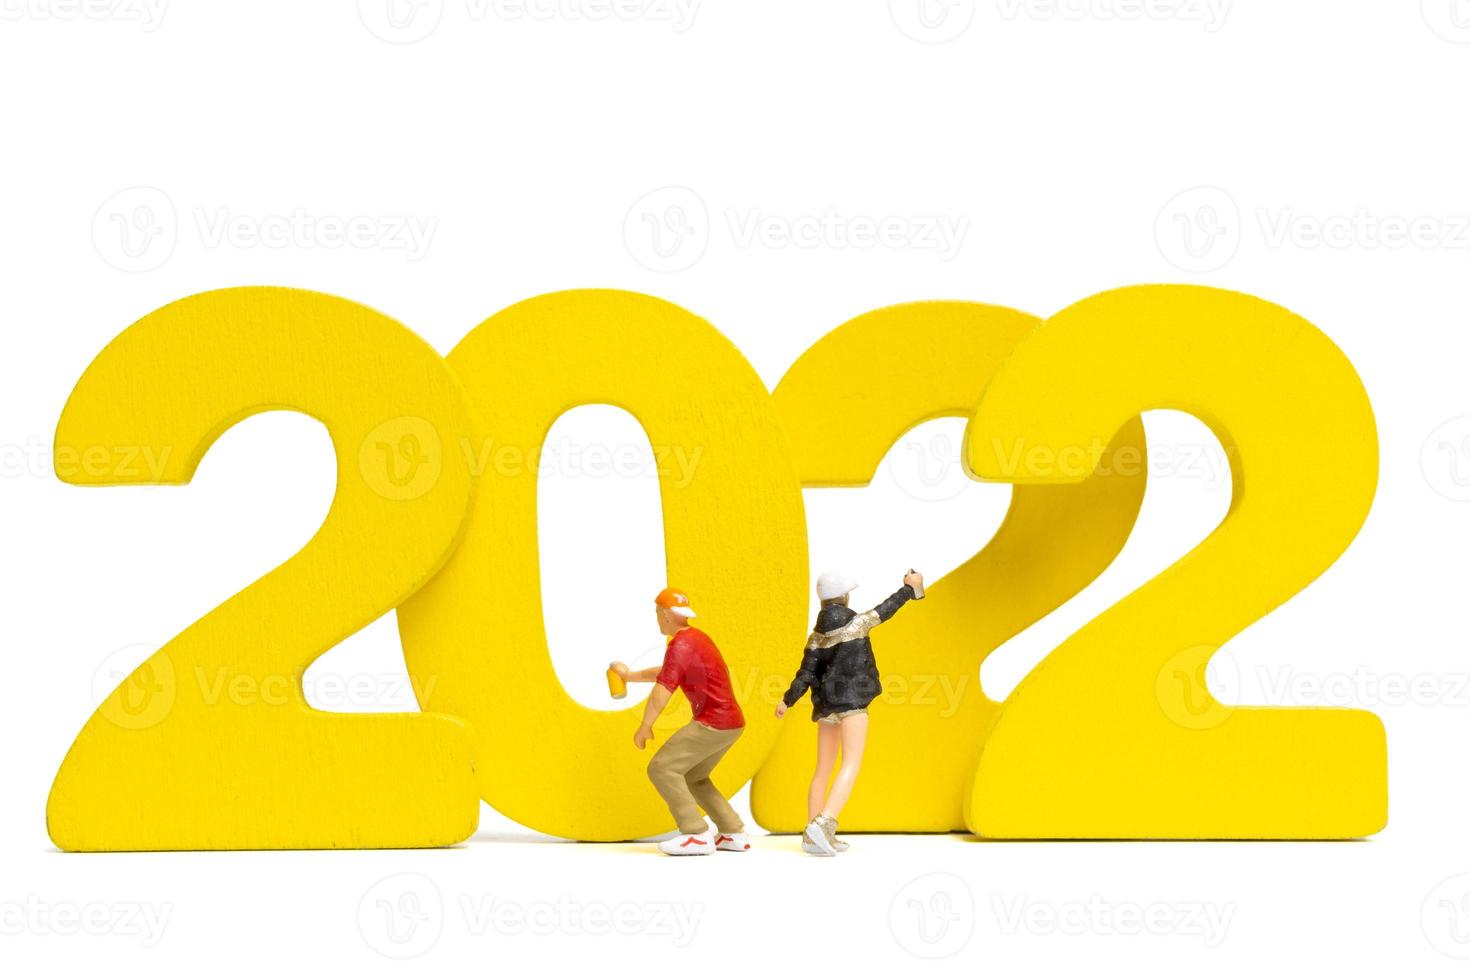 miniatyr människor tonåring spruta färg nummer 2022 på vit bakgrund foto